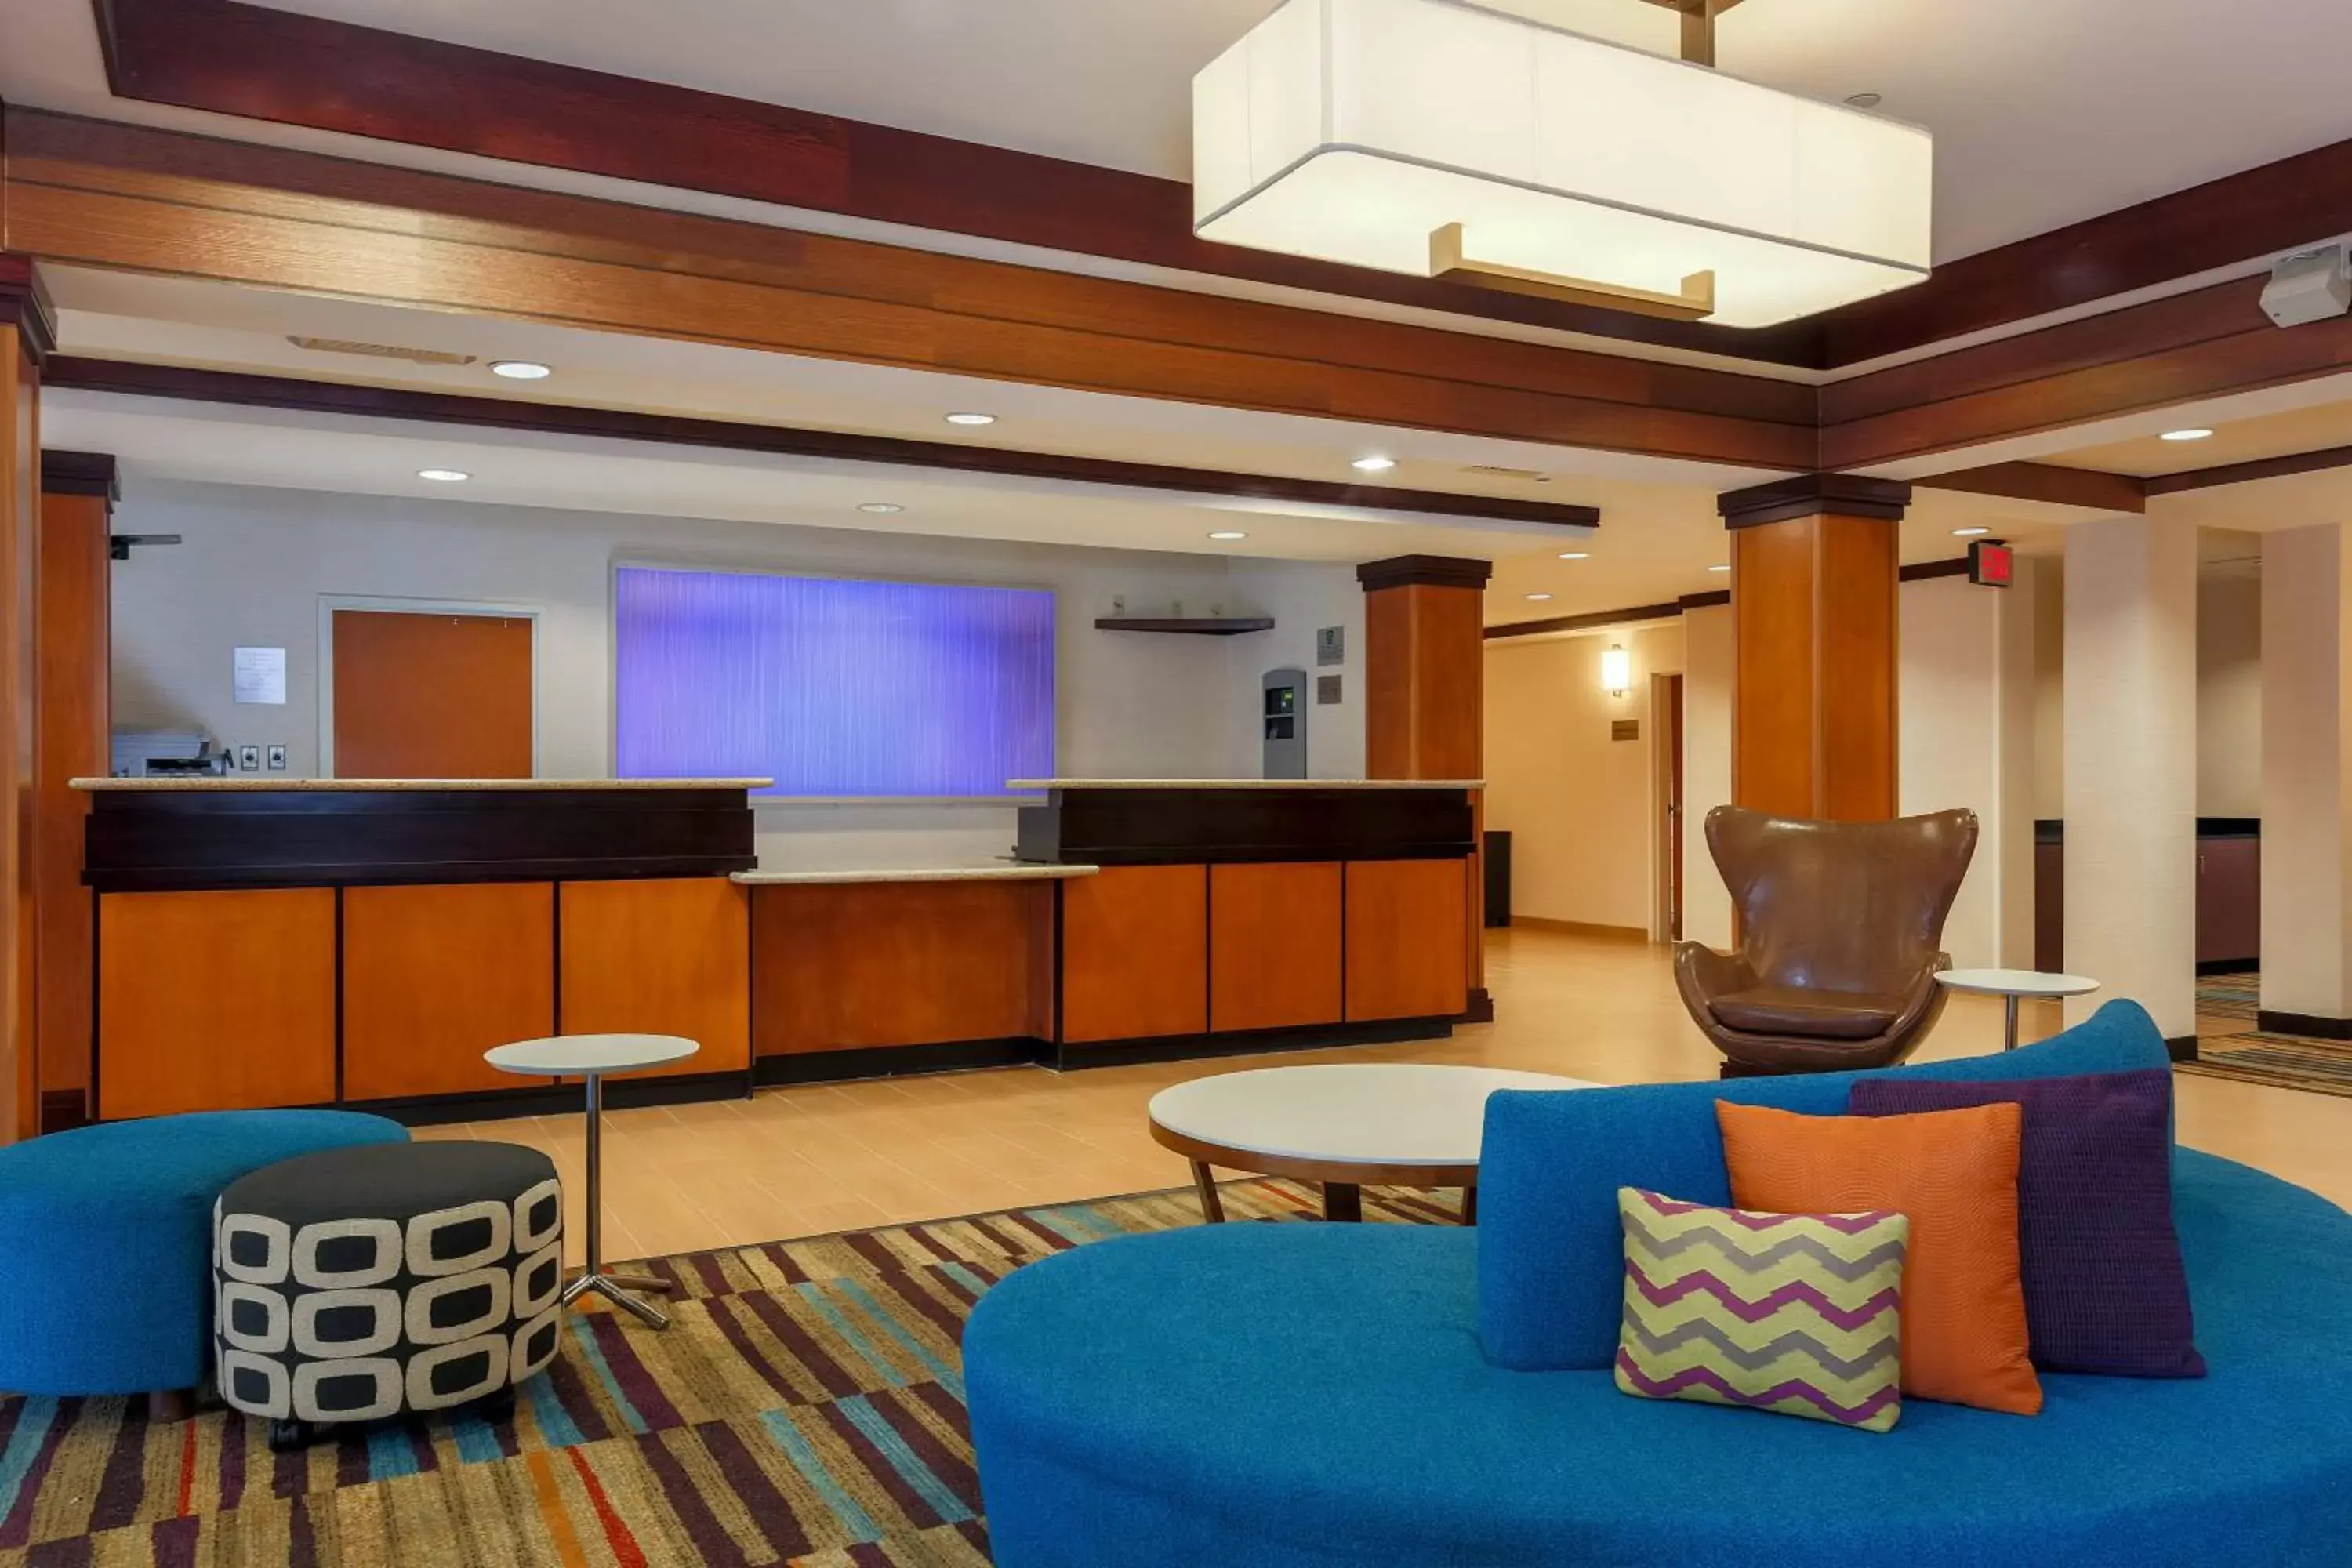 Lobby or reception, Lobby/Reception in Fairfield by Marriott Inn & Suites Las Vegas Stadium Area